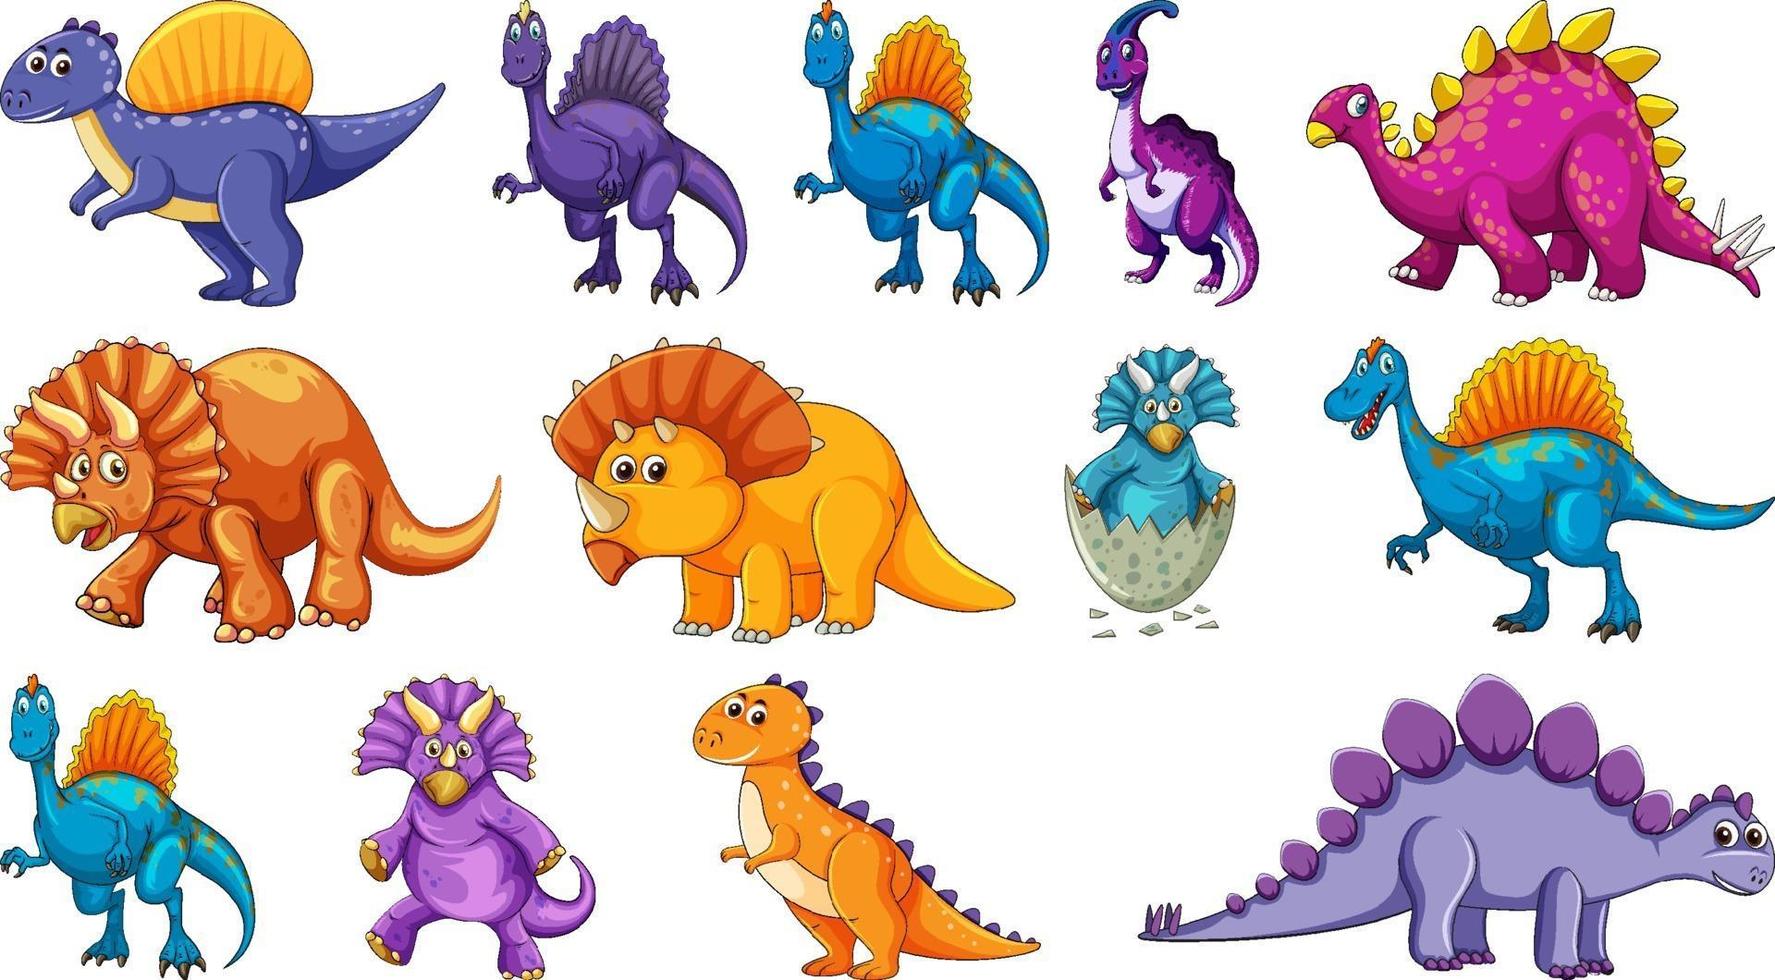 verschillende dinosaurussen stripfiguur en fantasie draken geïsoleerd vector